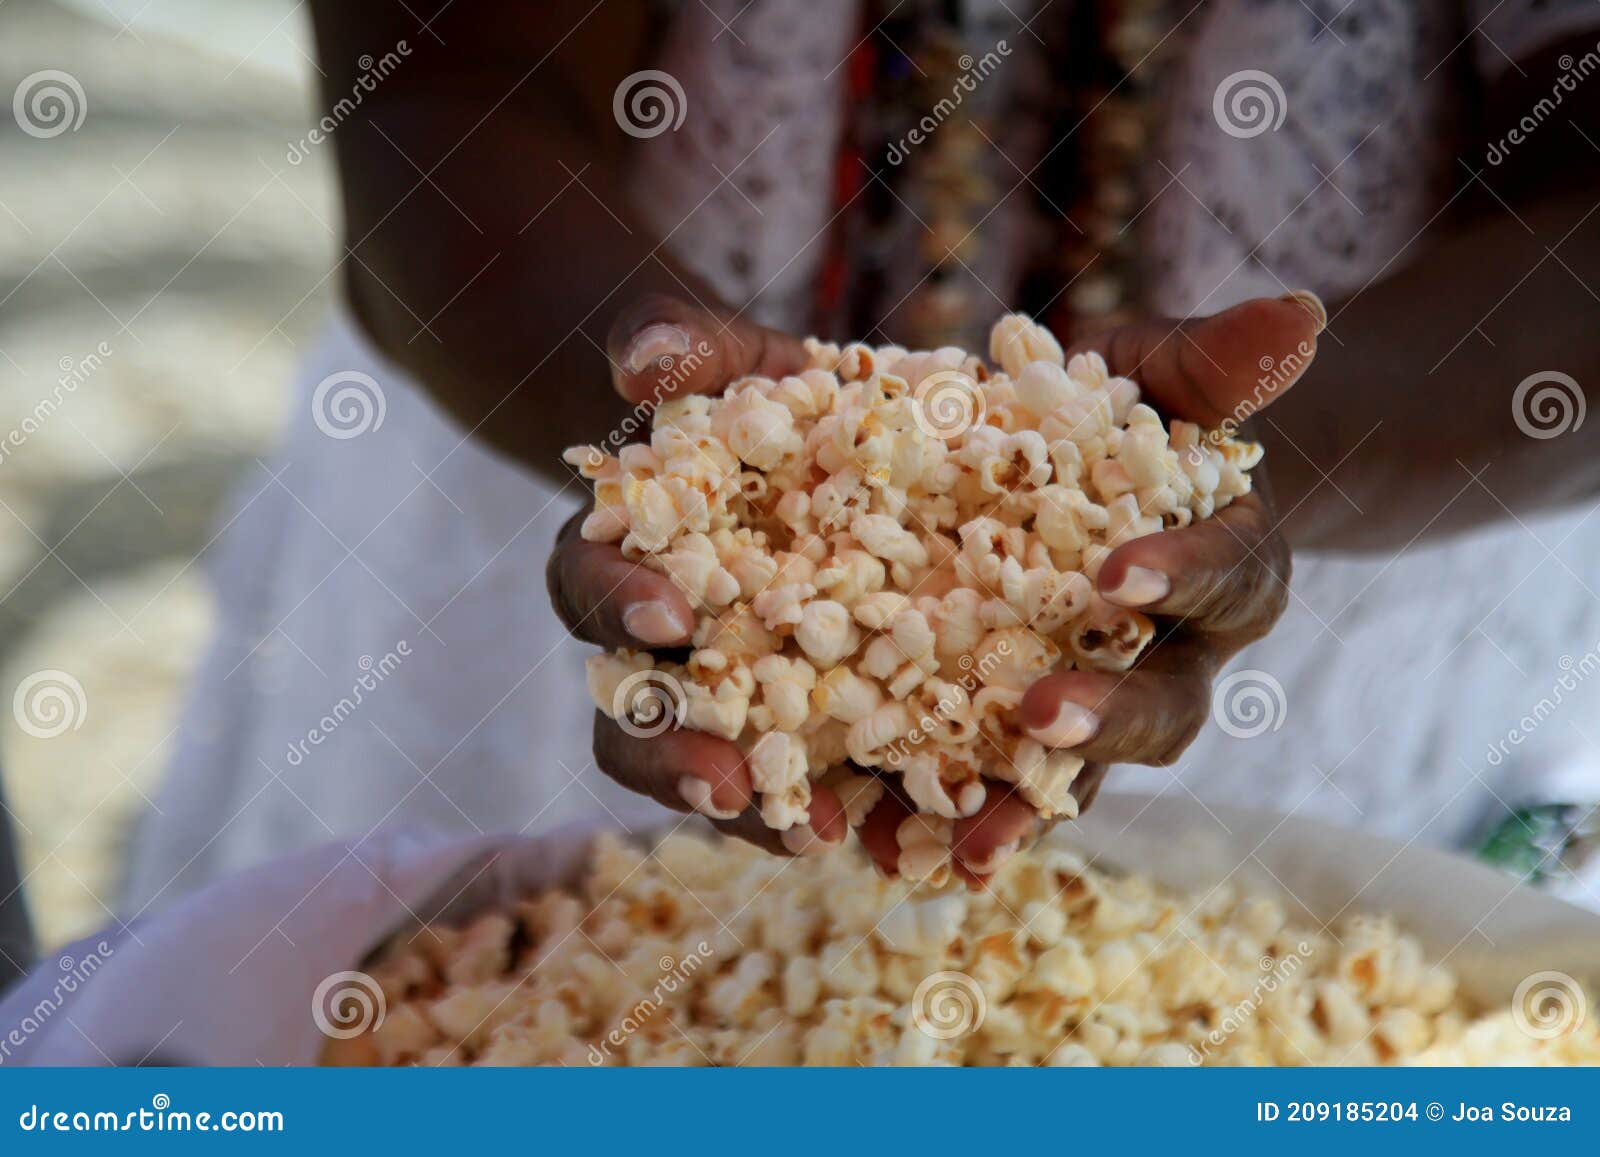 popcorn used in candomble ritual